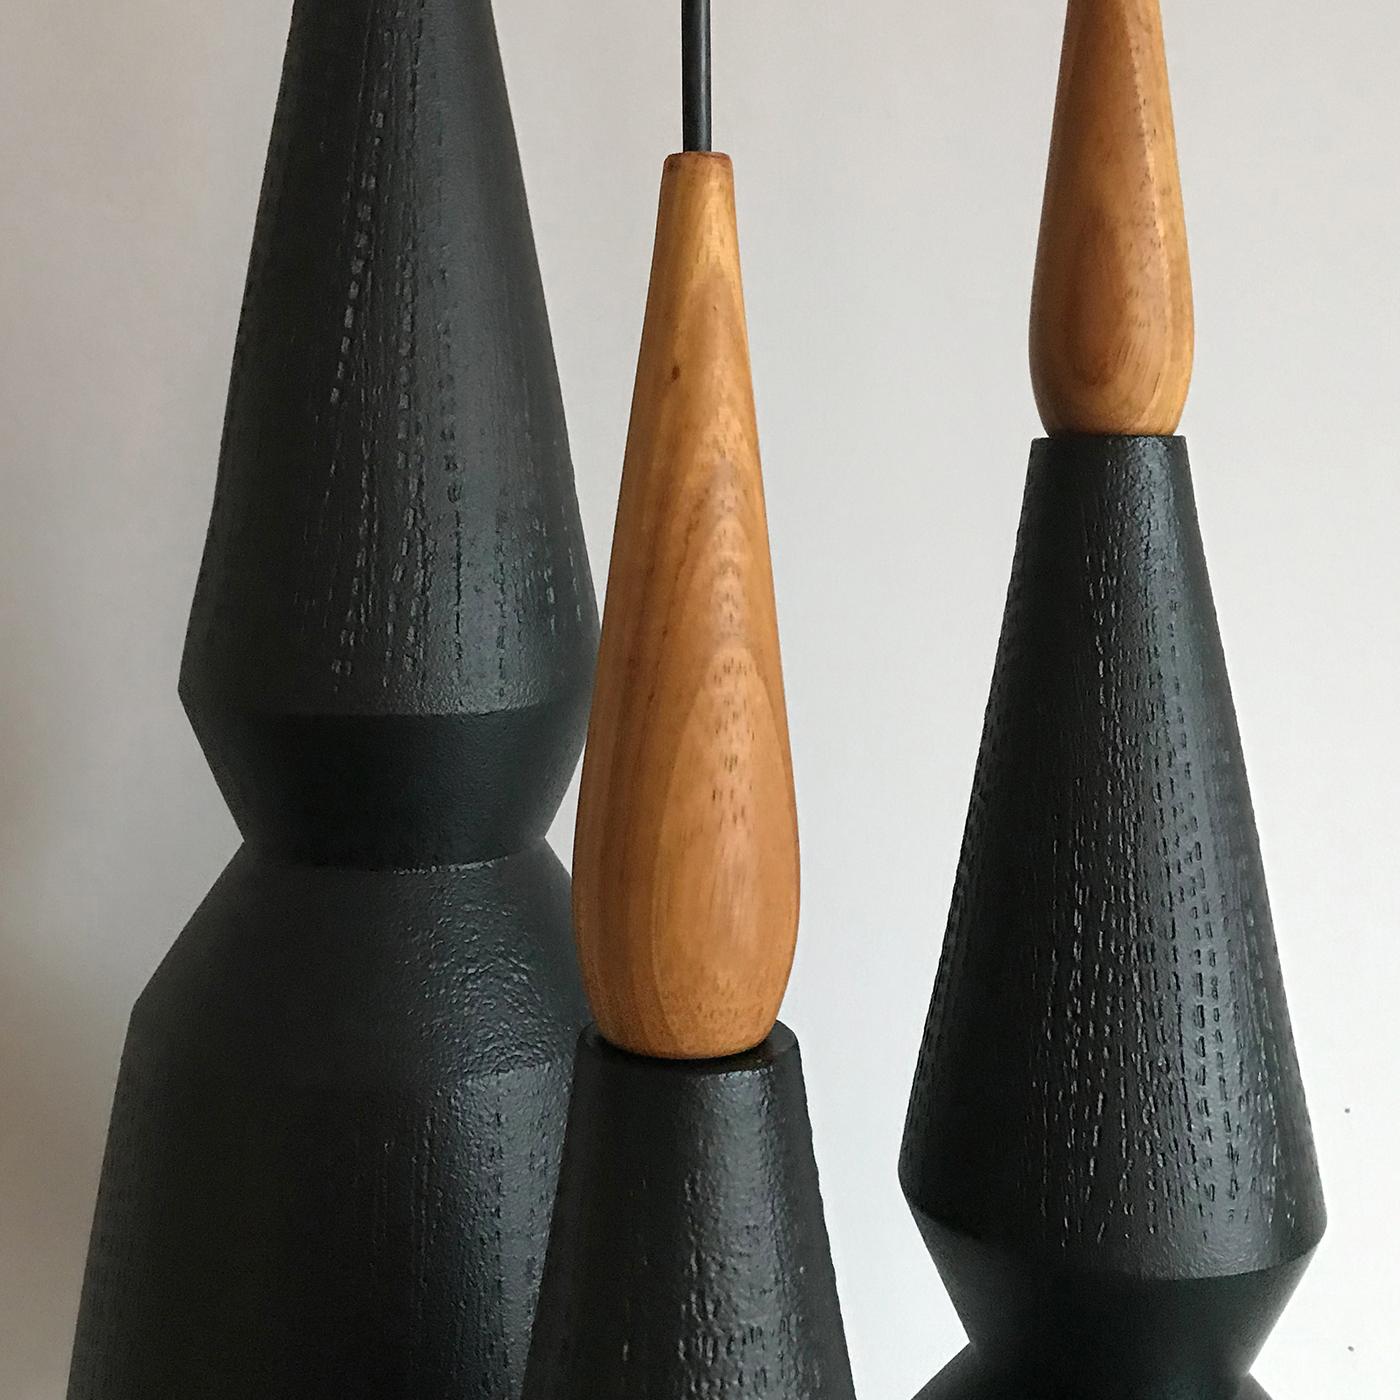 Italian Set of 3 Pendant Lamps in Wood and Ceramics #3